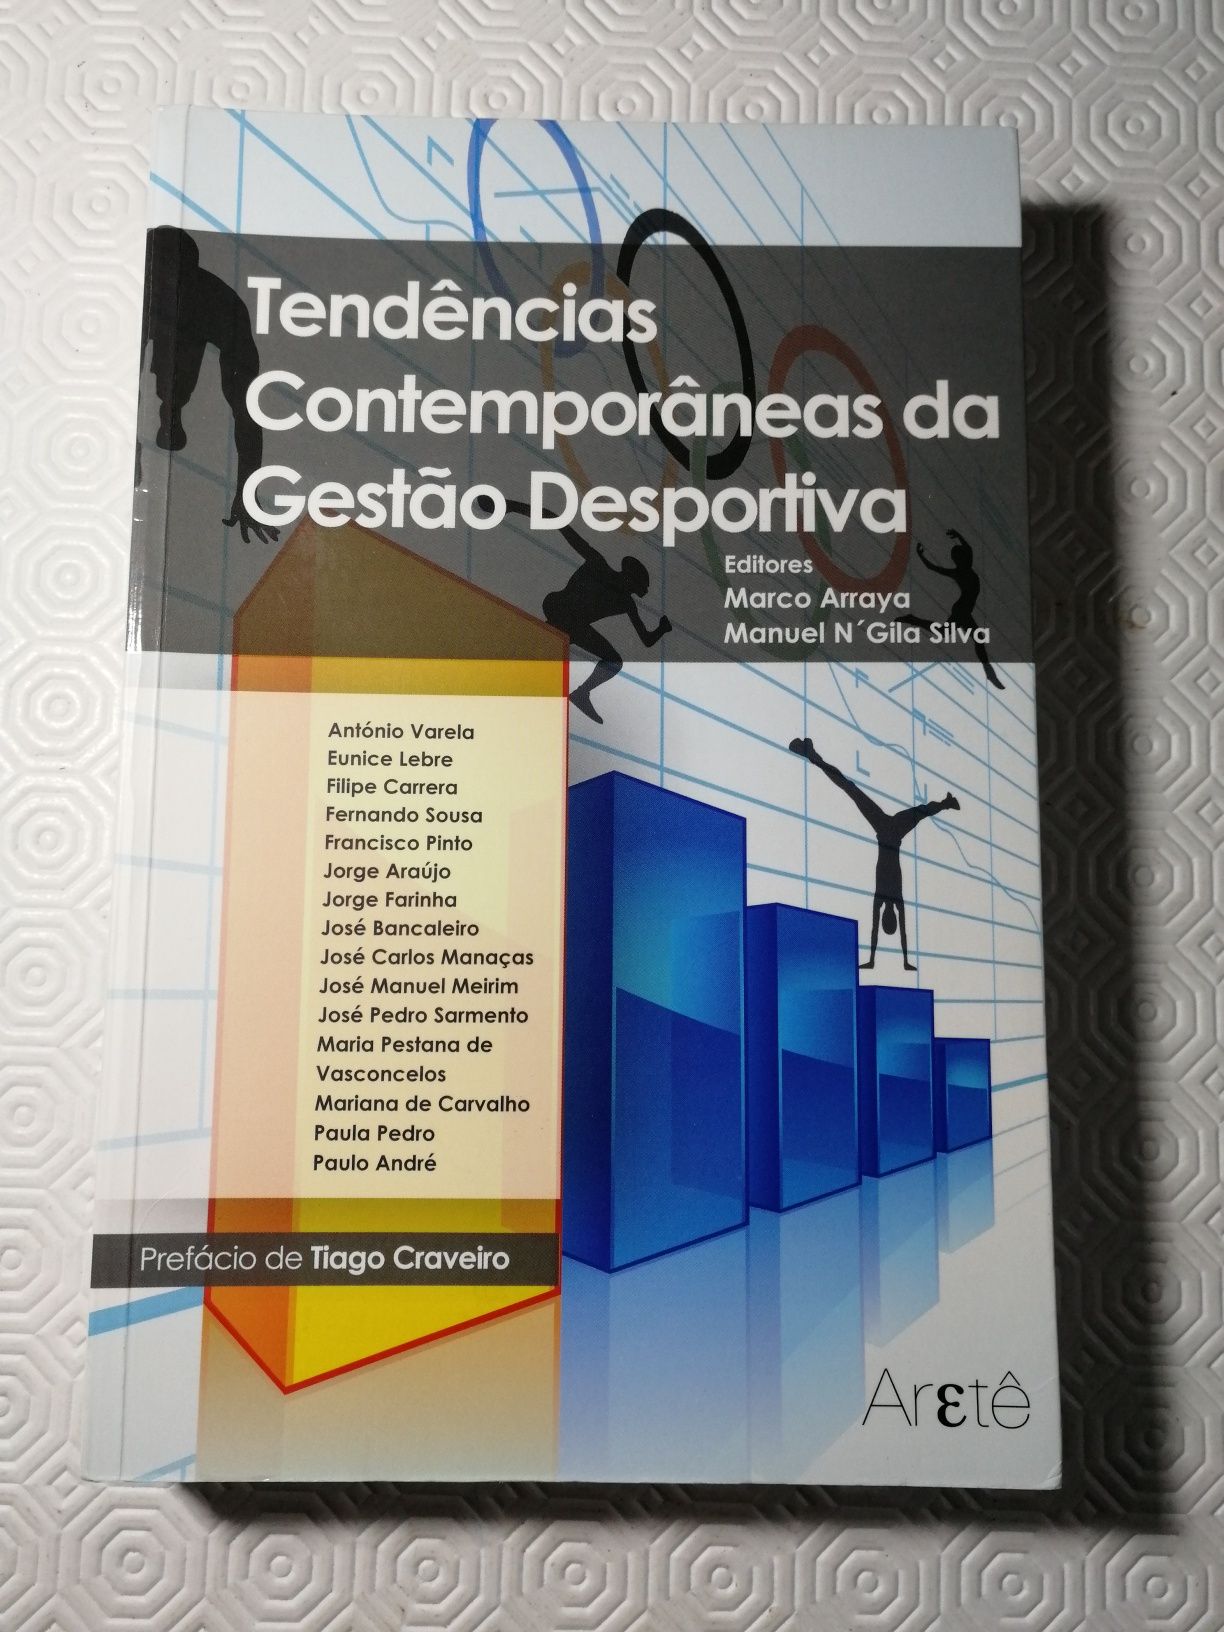 Livro "Tendências contemporâneas da gestão desportiva"